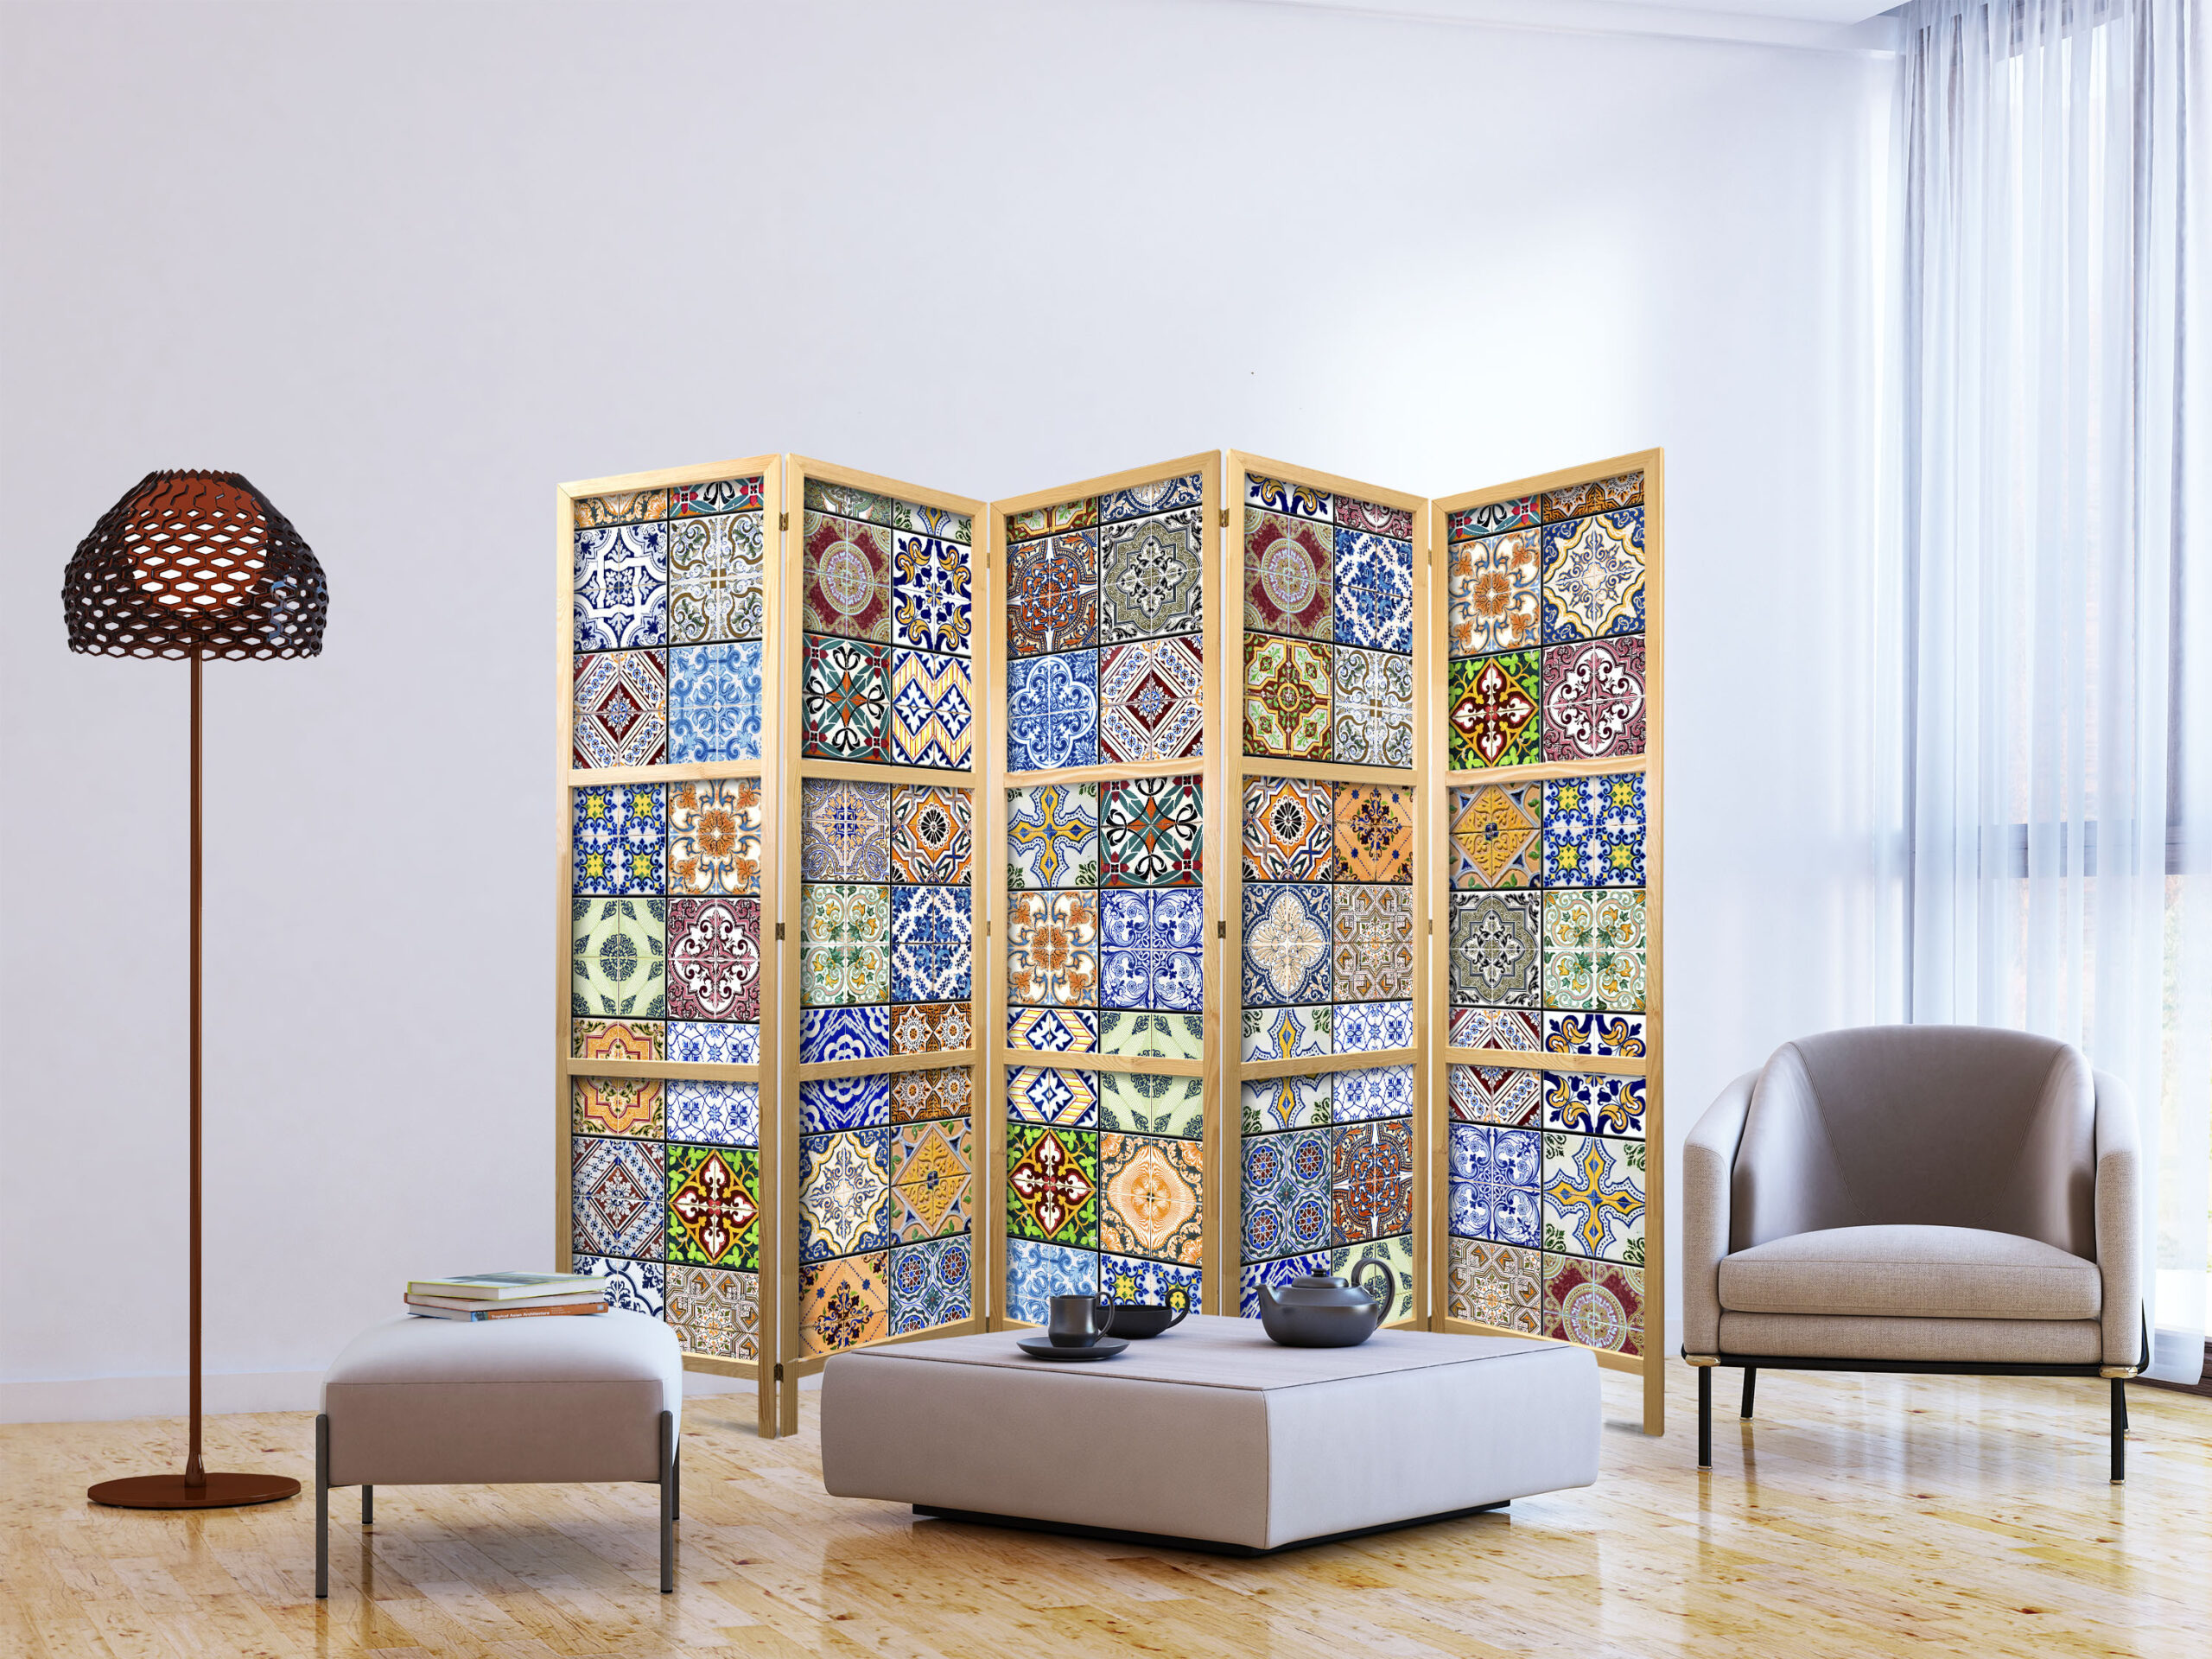 Paravent Raumteiler Holz Trennwand Raumtrenner Spanische Wand Wohnzimmer  Mosaik regarding Trennwand Wohnzimmer